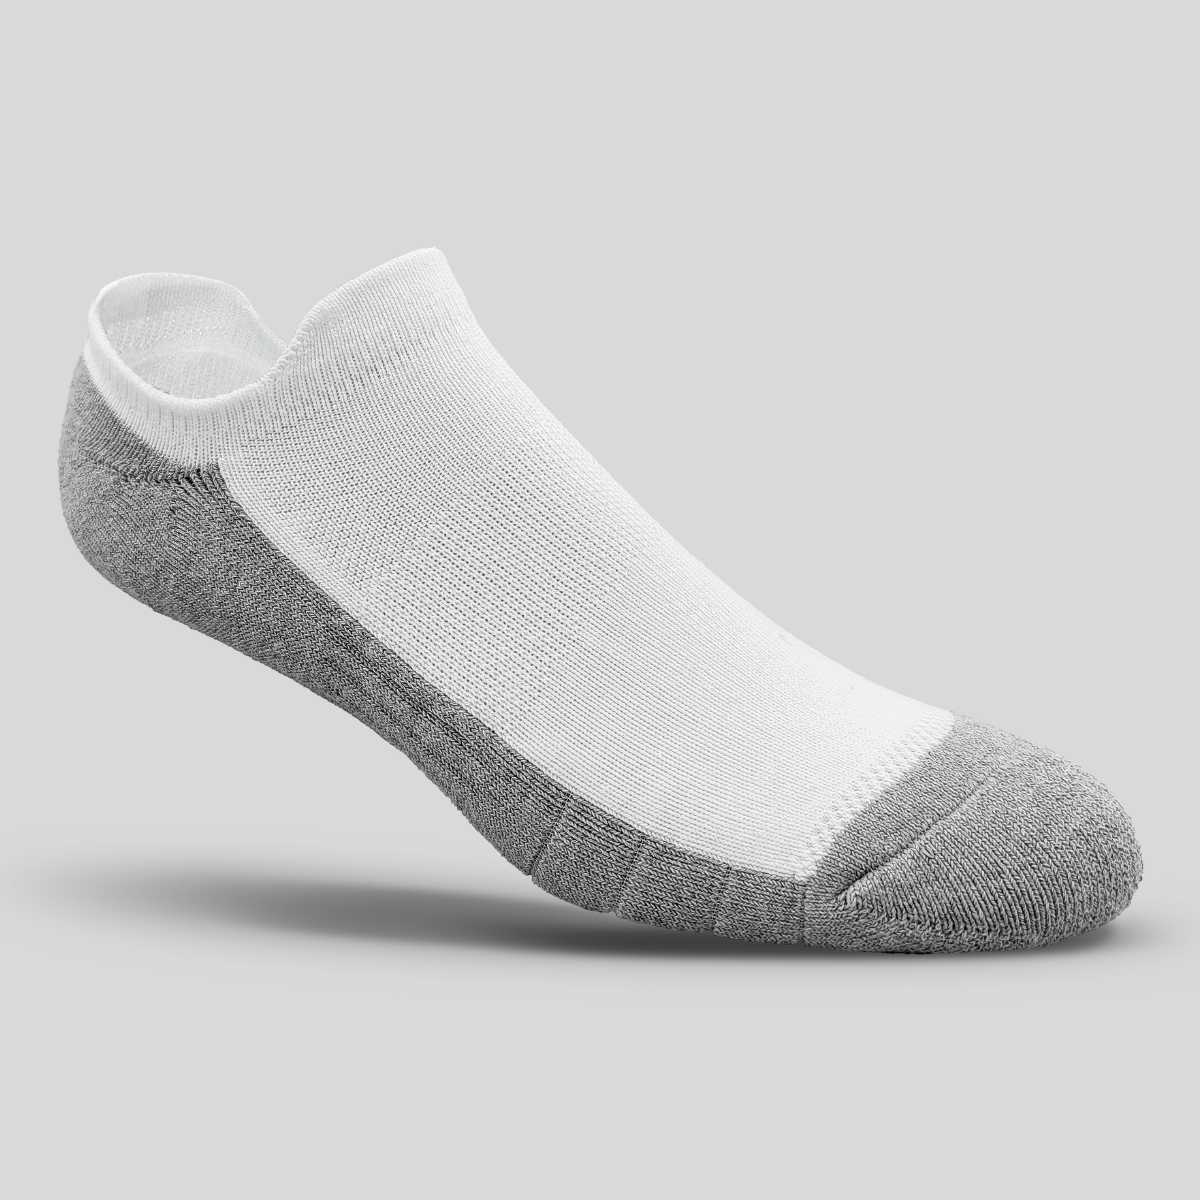 Men's Black Ankle Socks - Nothing New®